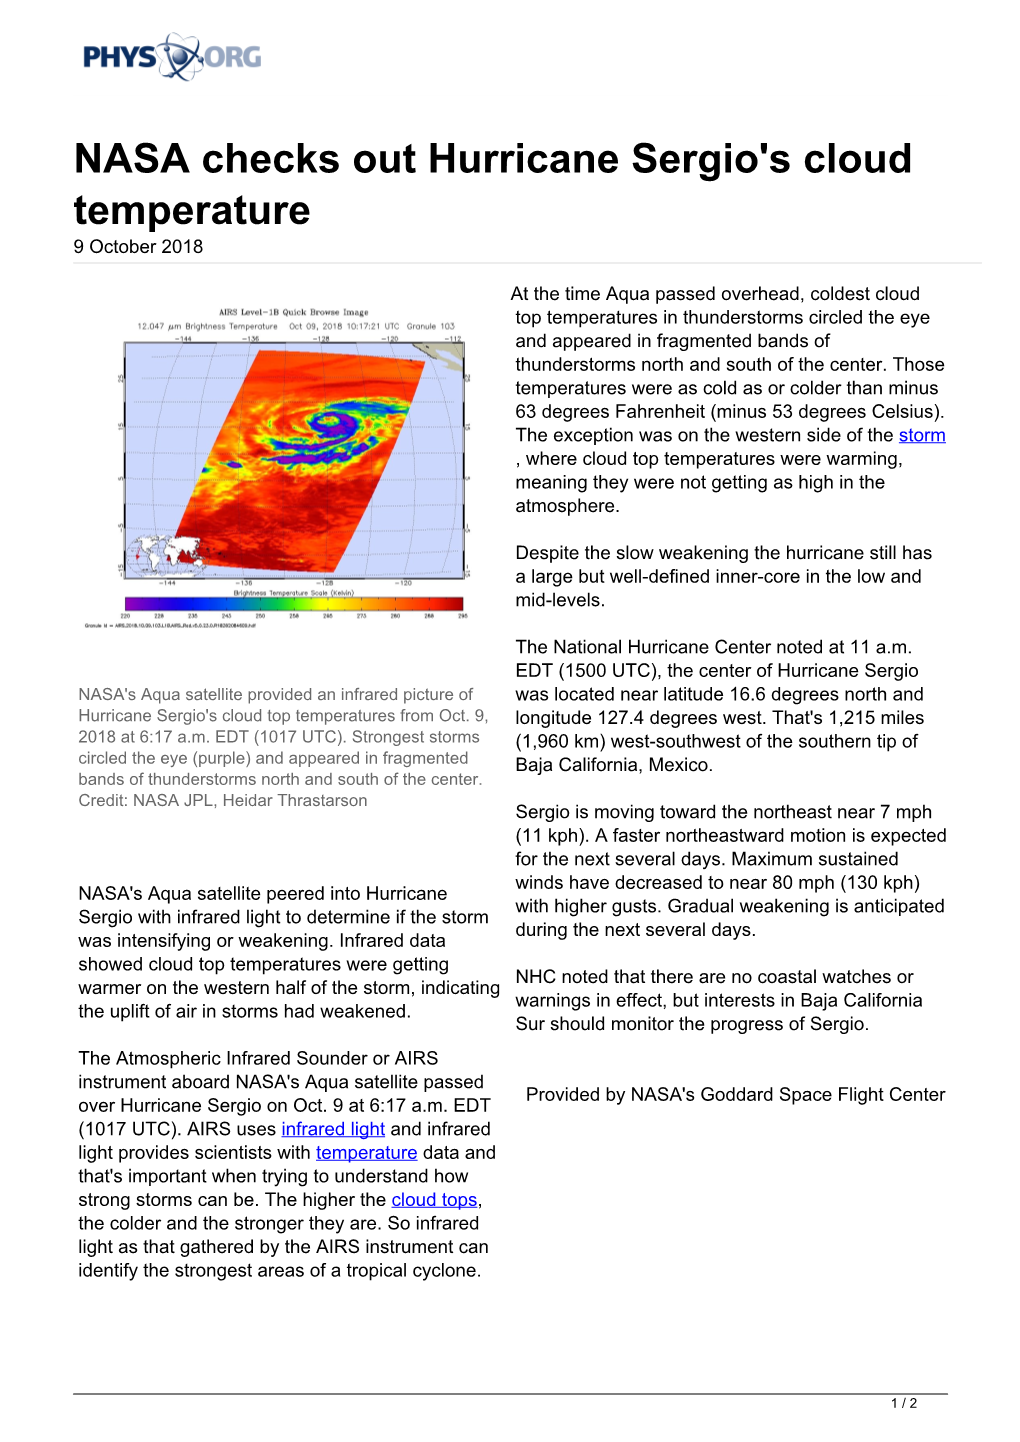 NASA Checks out Hurricane Sergio's Cloud Temperature 9 October 2018